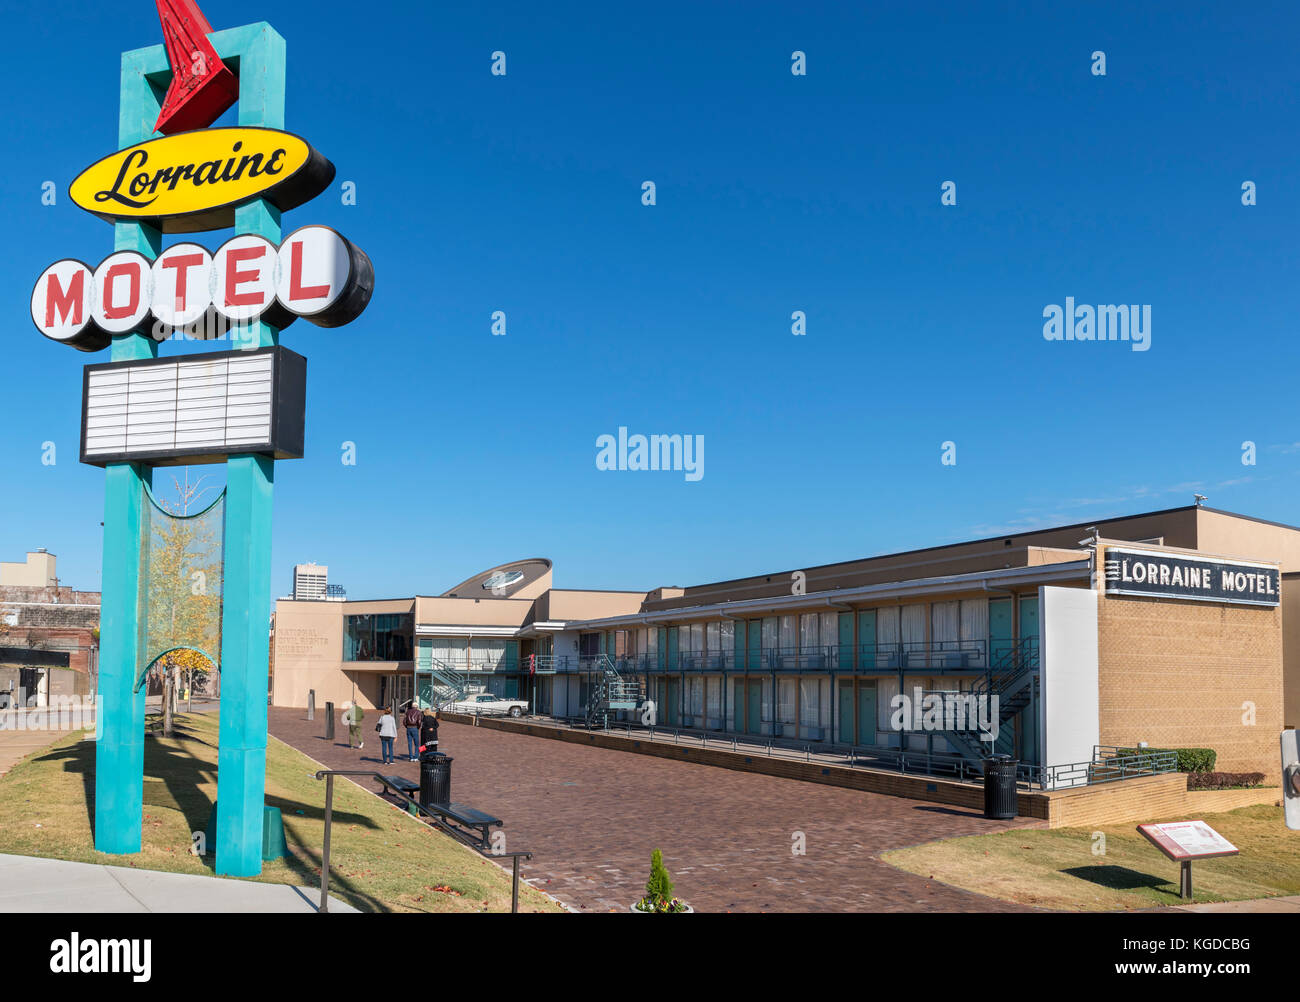 Die bürgerlichen Rechte Nationalmuseum im Lorraine Motel, Memphis, Tennessee, USA Stockfoto